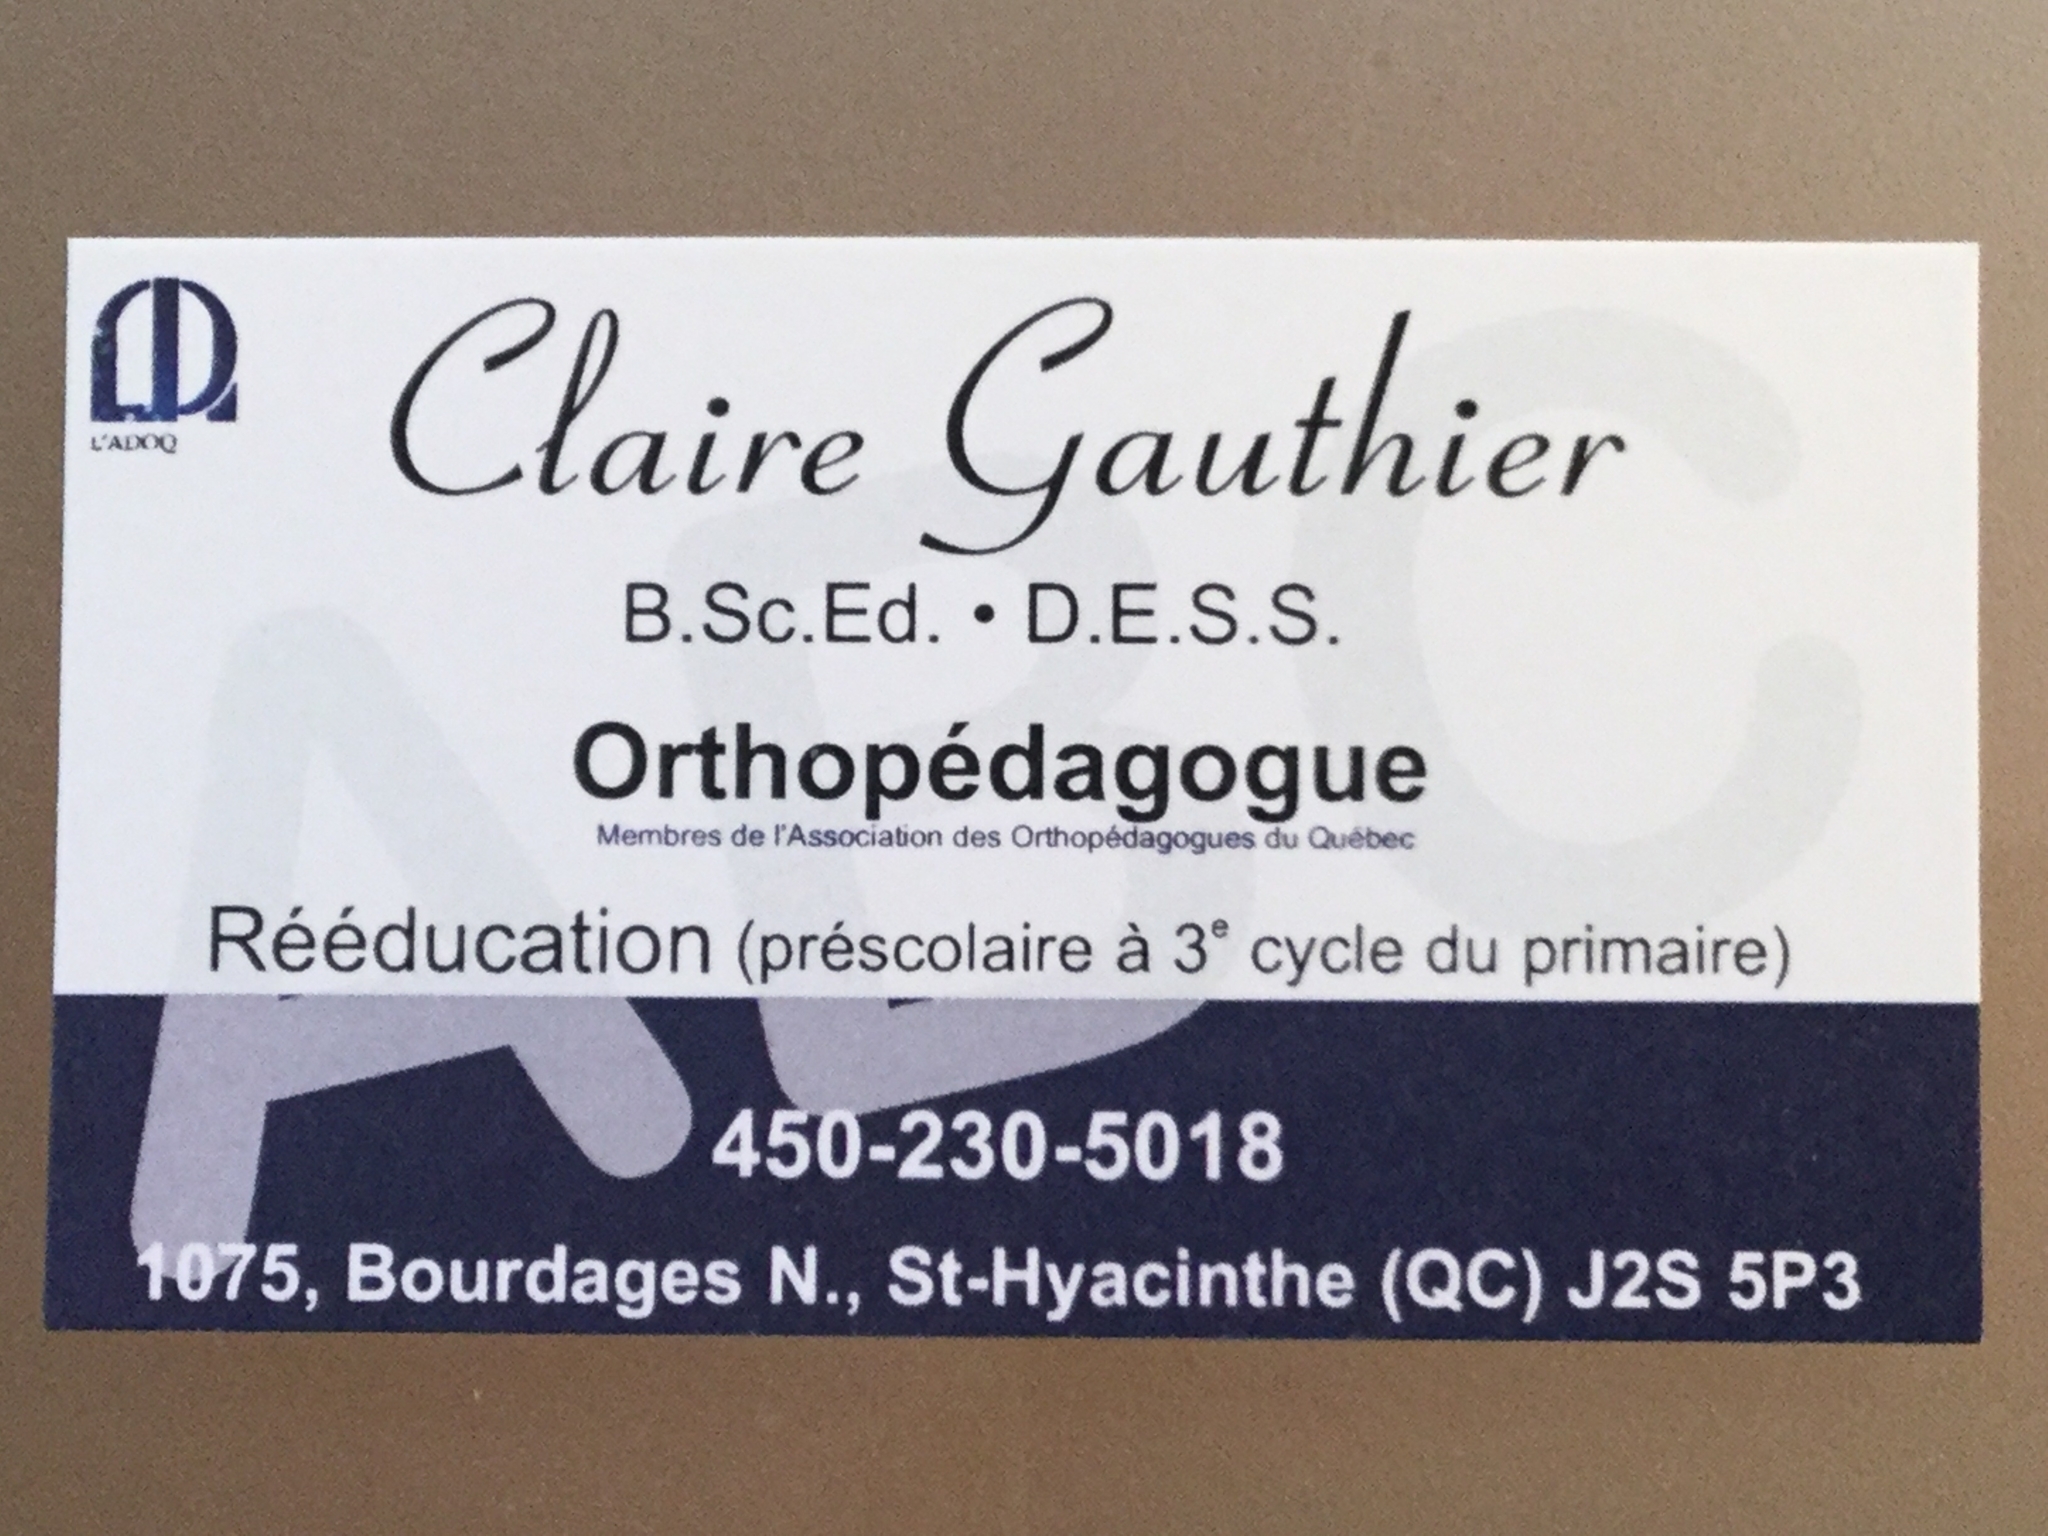 View Orthopédagogue - Claire Gauthier’s Mont-Saint-Hilaire profile